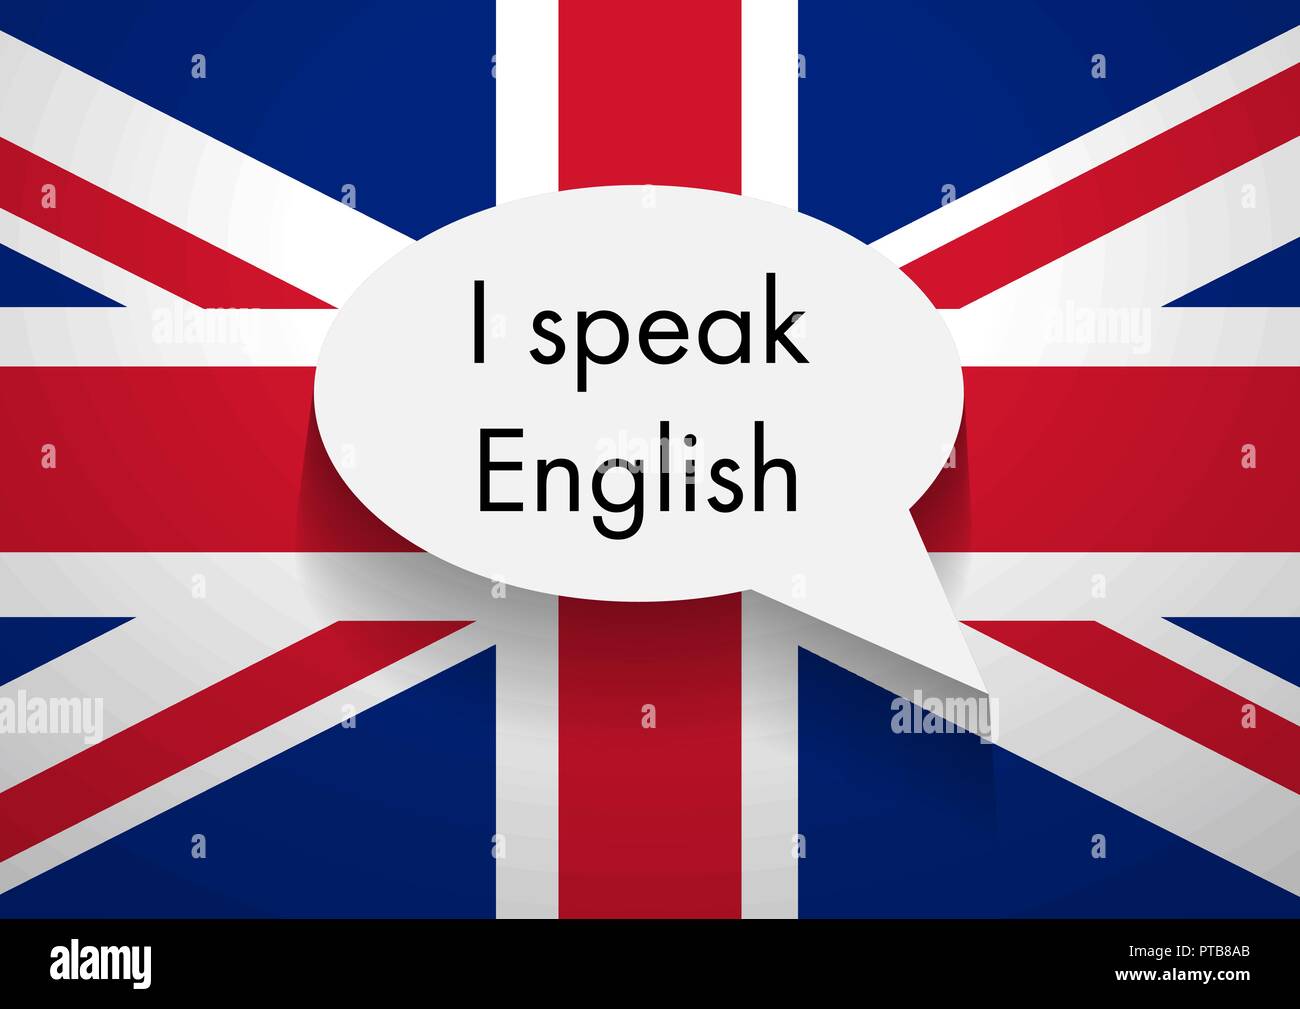 Знать английский в совершенстве. Я говорю на английском языке. Английский язык в совершенстве. Знаю английский. Я знаю английский язык.